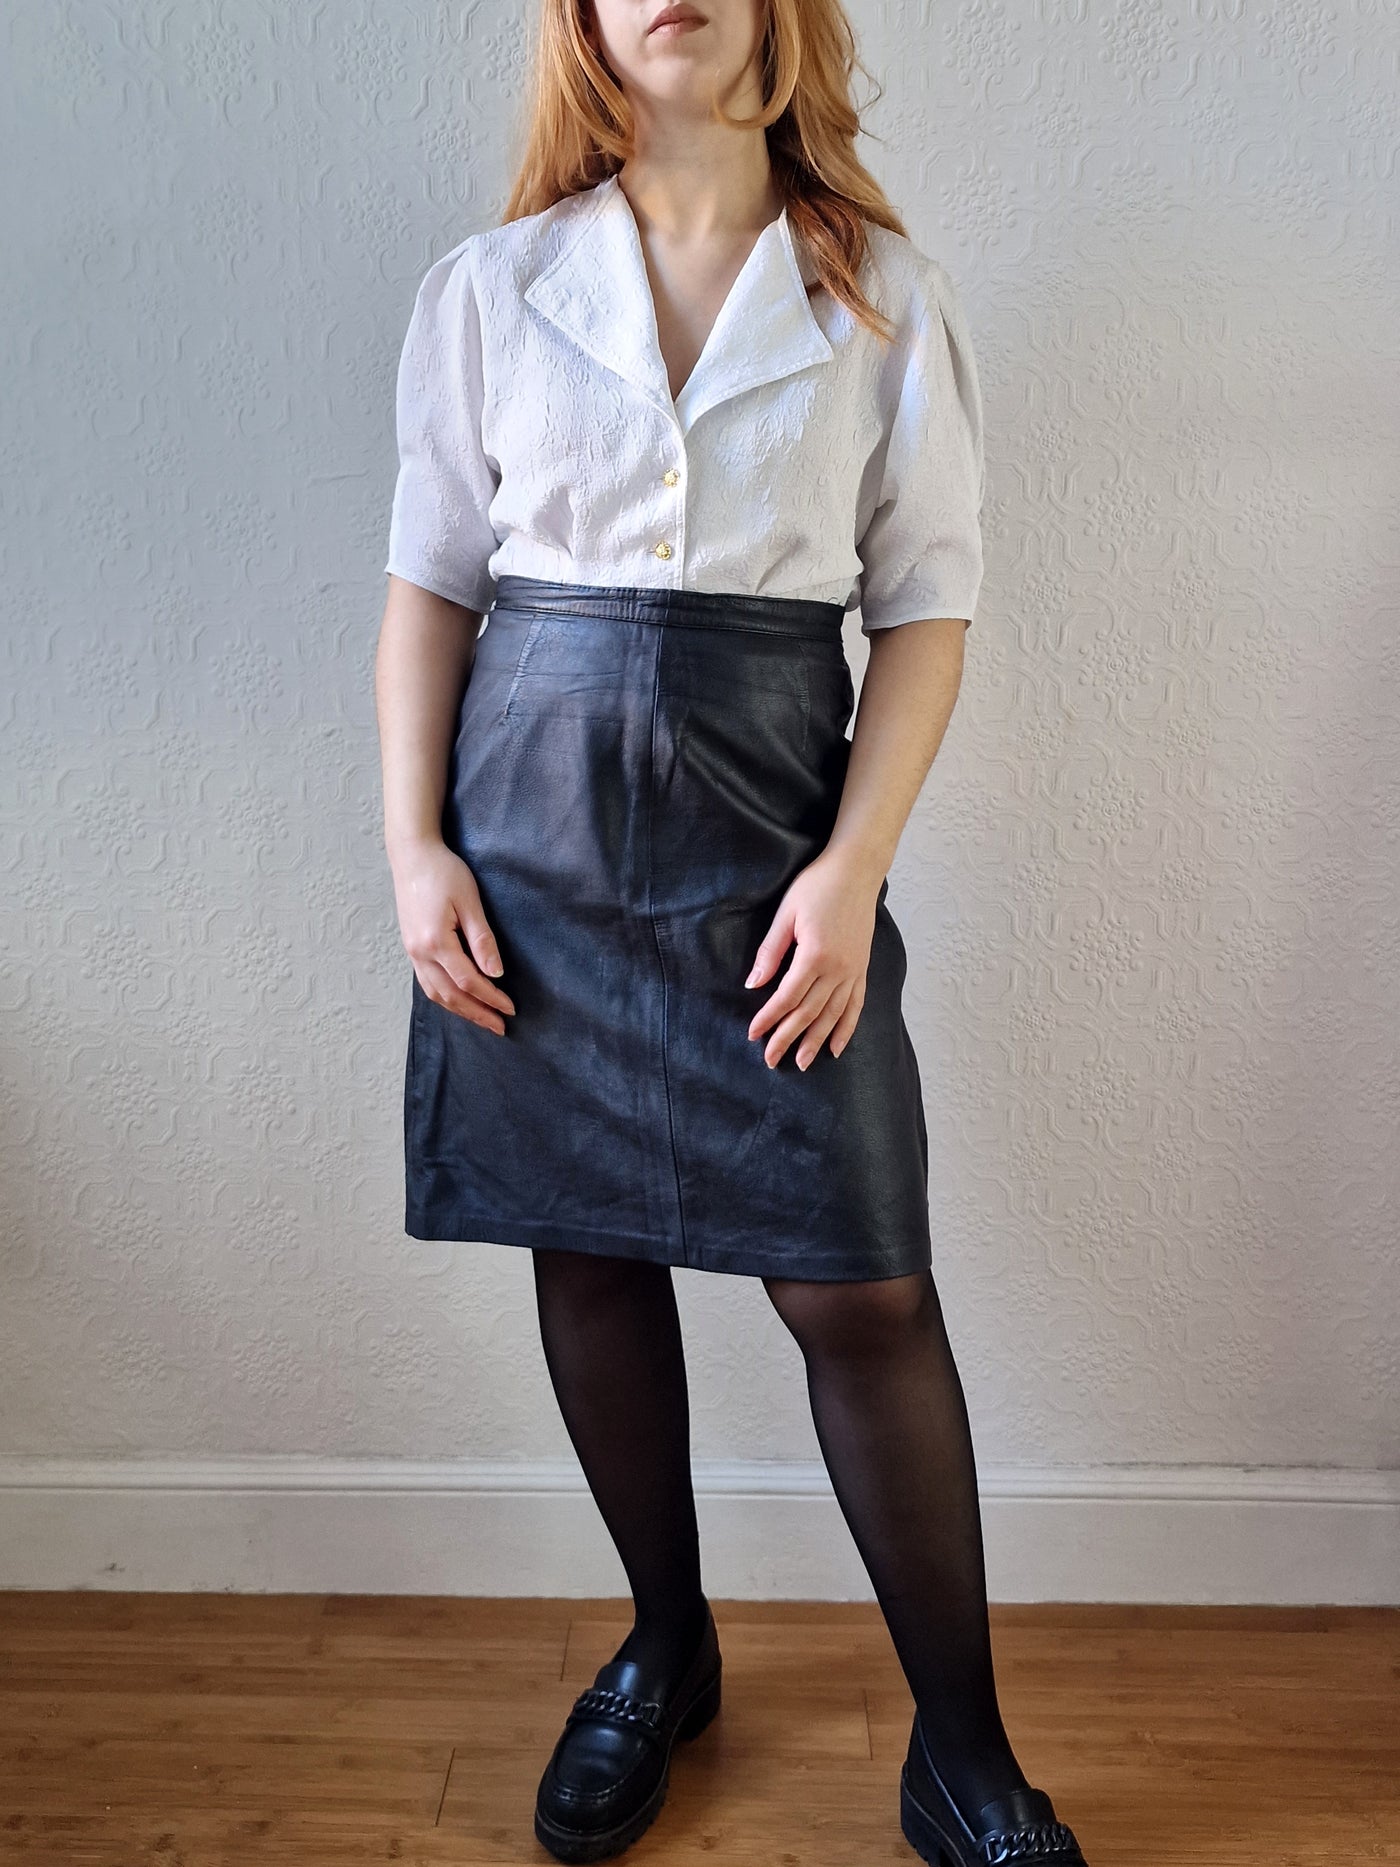 Vintage Black 100% Genuine Leather Skirt - M